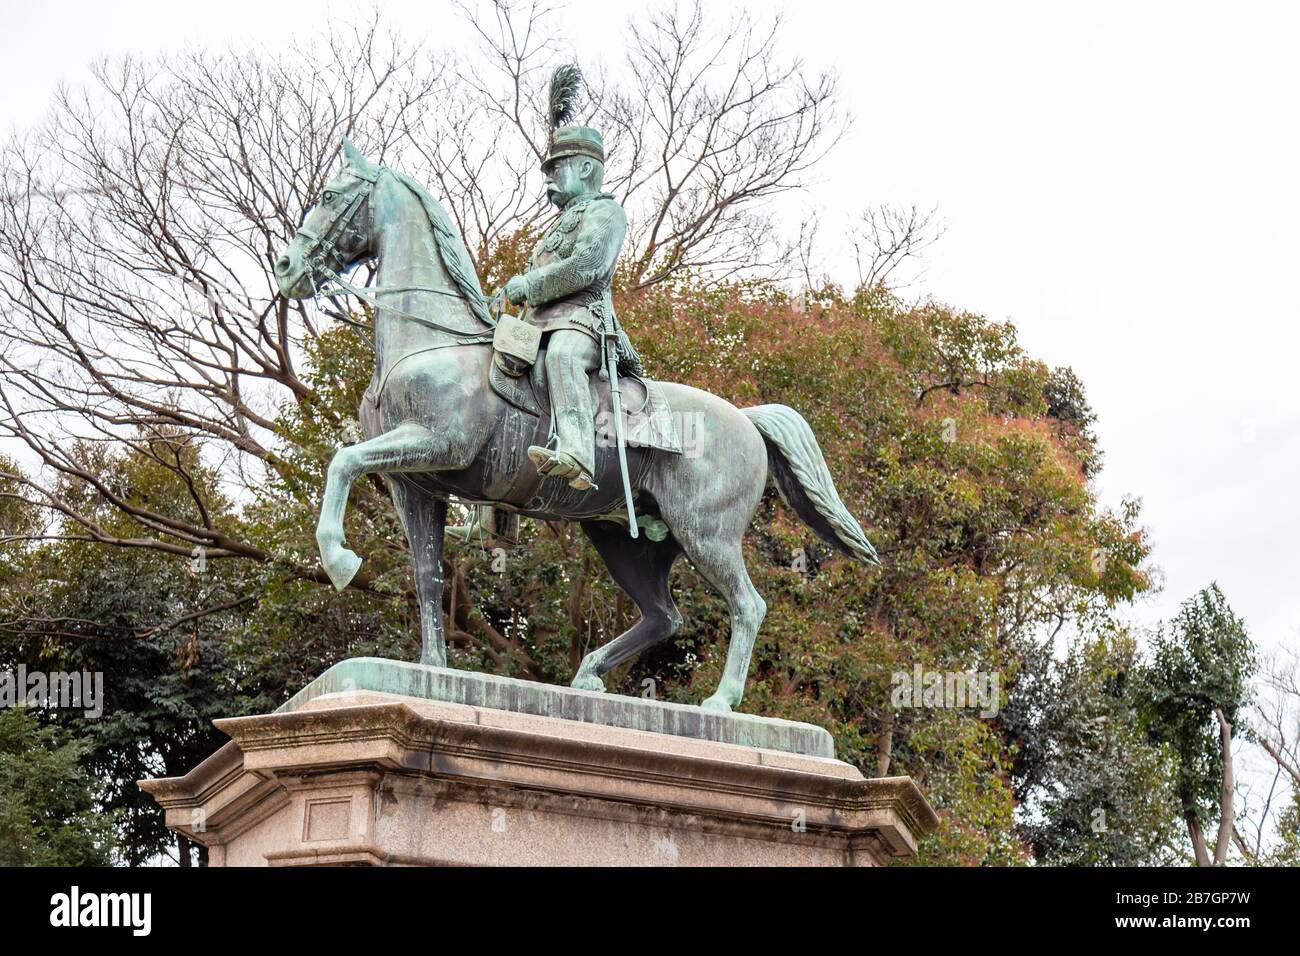 TOKIO, JAPAN - 8. FEBRUAR 2019: Statue des Prinzen Komatsu Akihito (Komatsu no miya), Ueno Park, Tokio Stockfoto